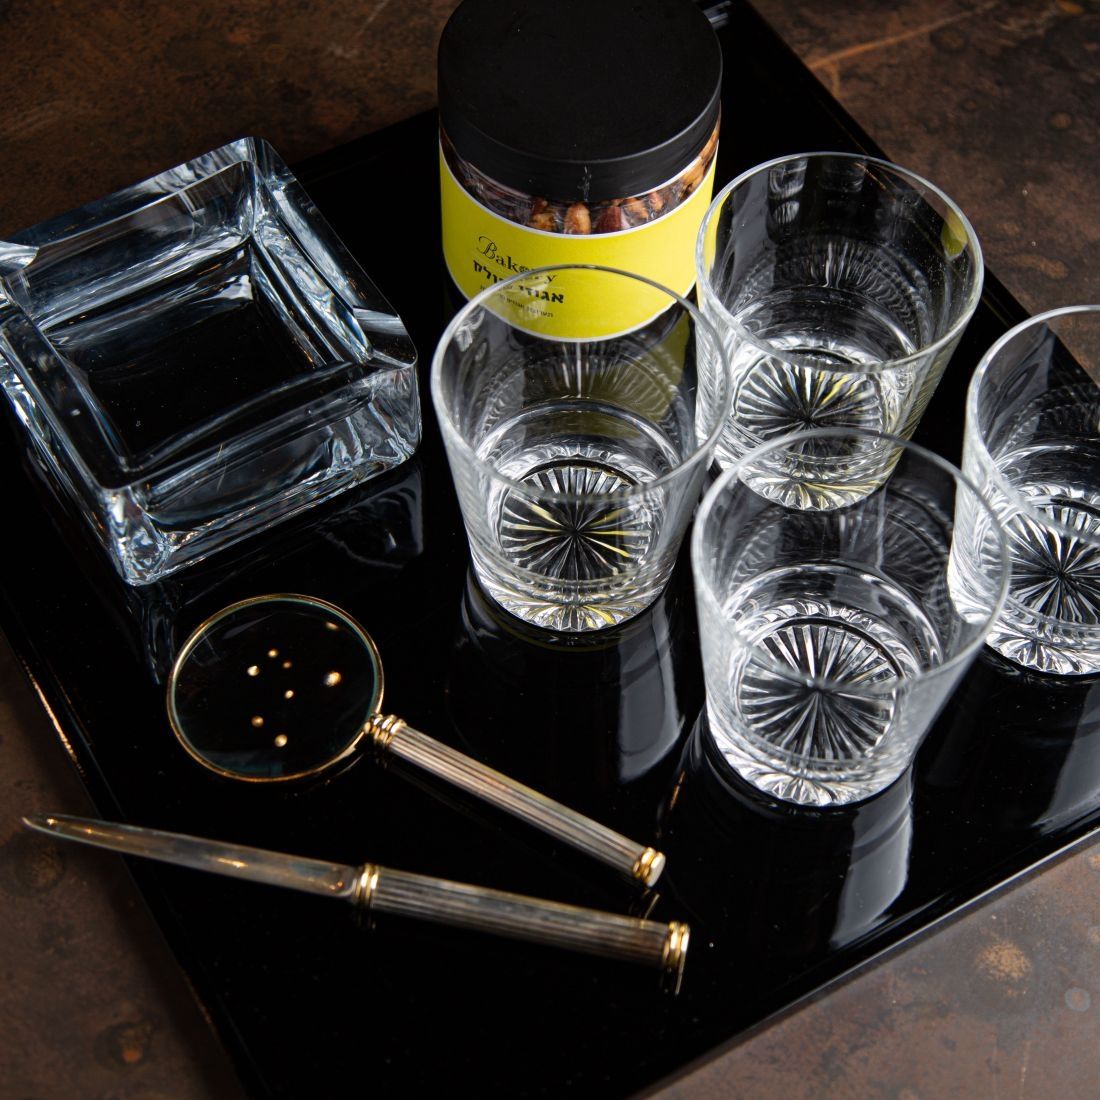 מארז מד מן - זכוכית מגדלת ופותח מכתבים וינטג', 4 כוסות ויסקי, מאפרת זכוכית ואגוזי פולק.